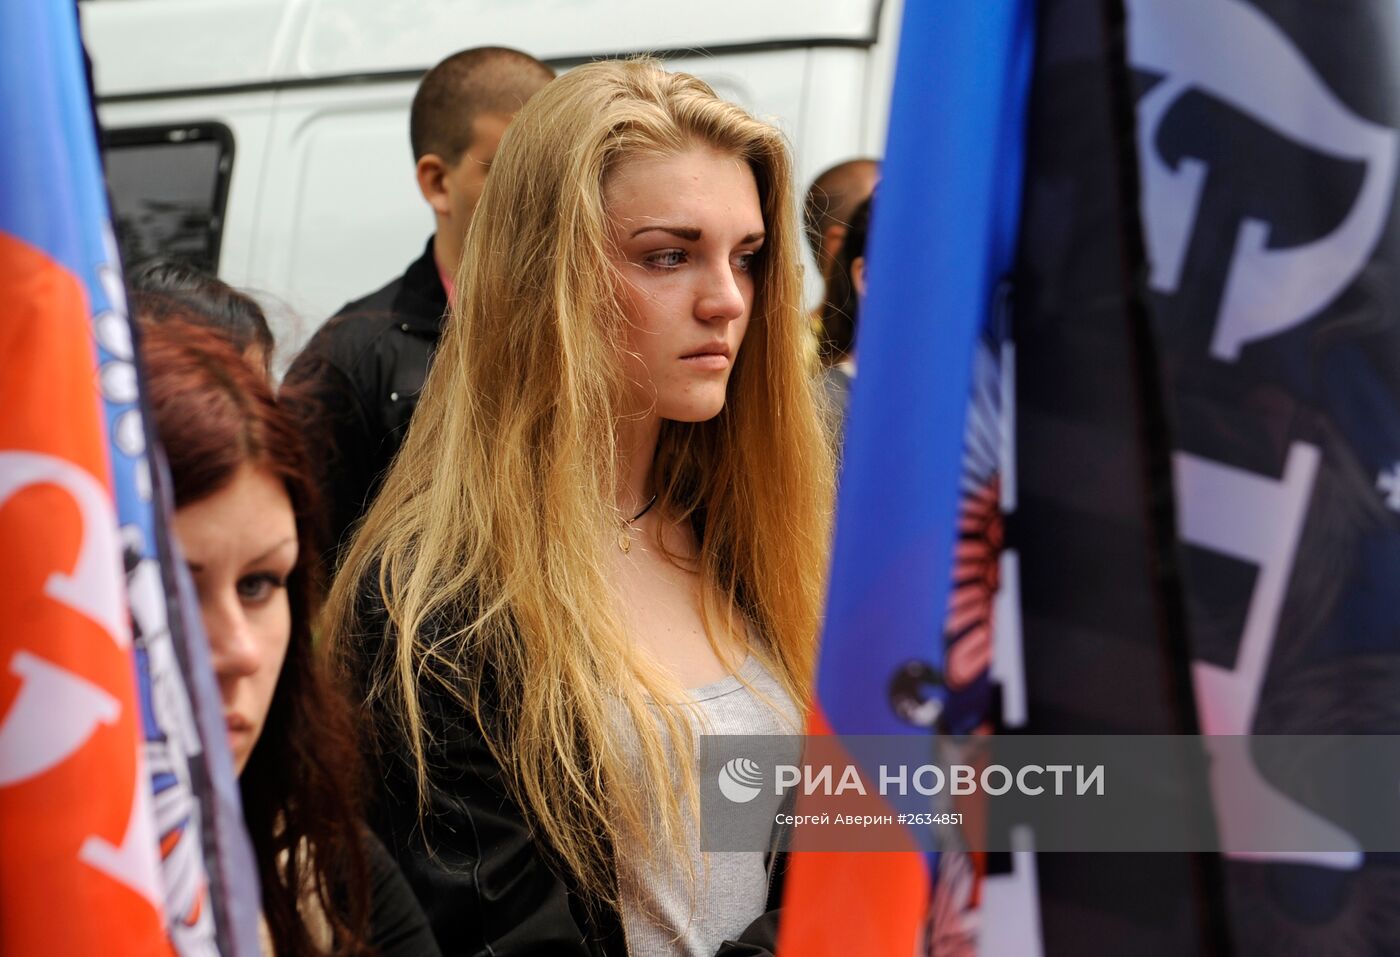 Митинг в память о погибших детях Донбасса прошел в Донецке 1 июня